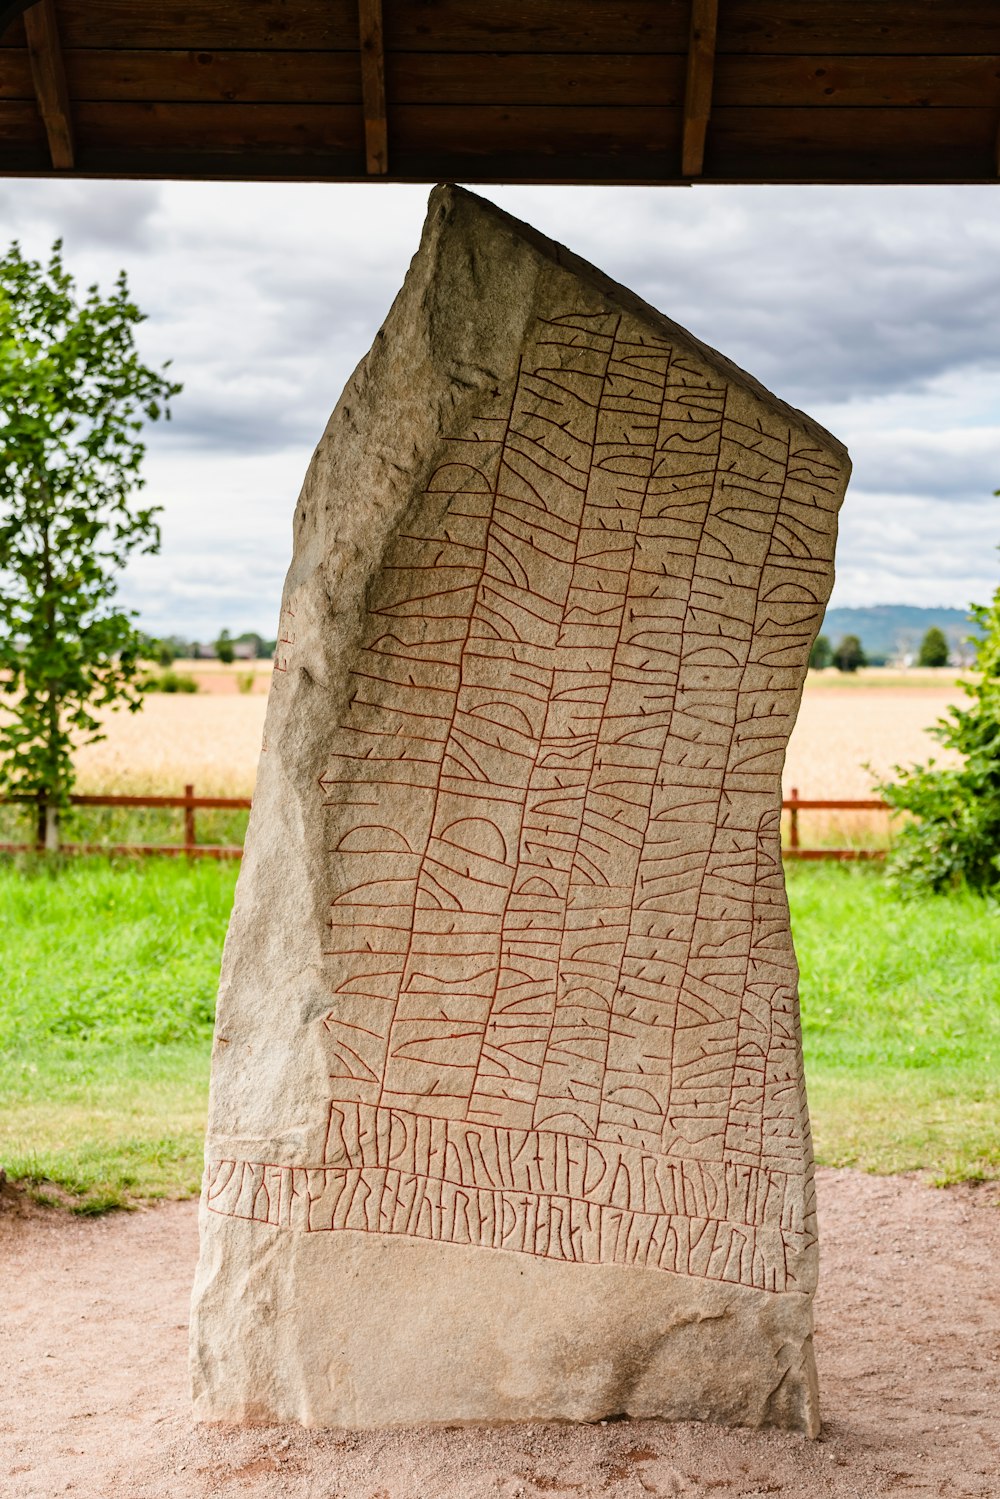 a large rock sculpture